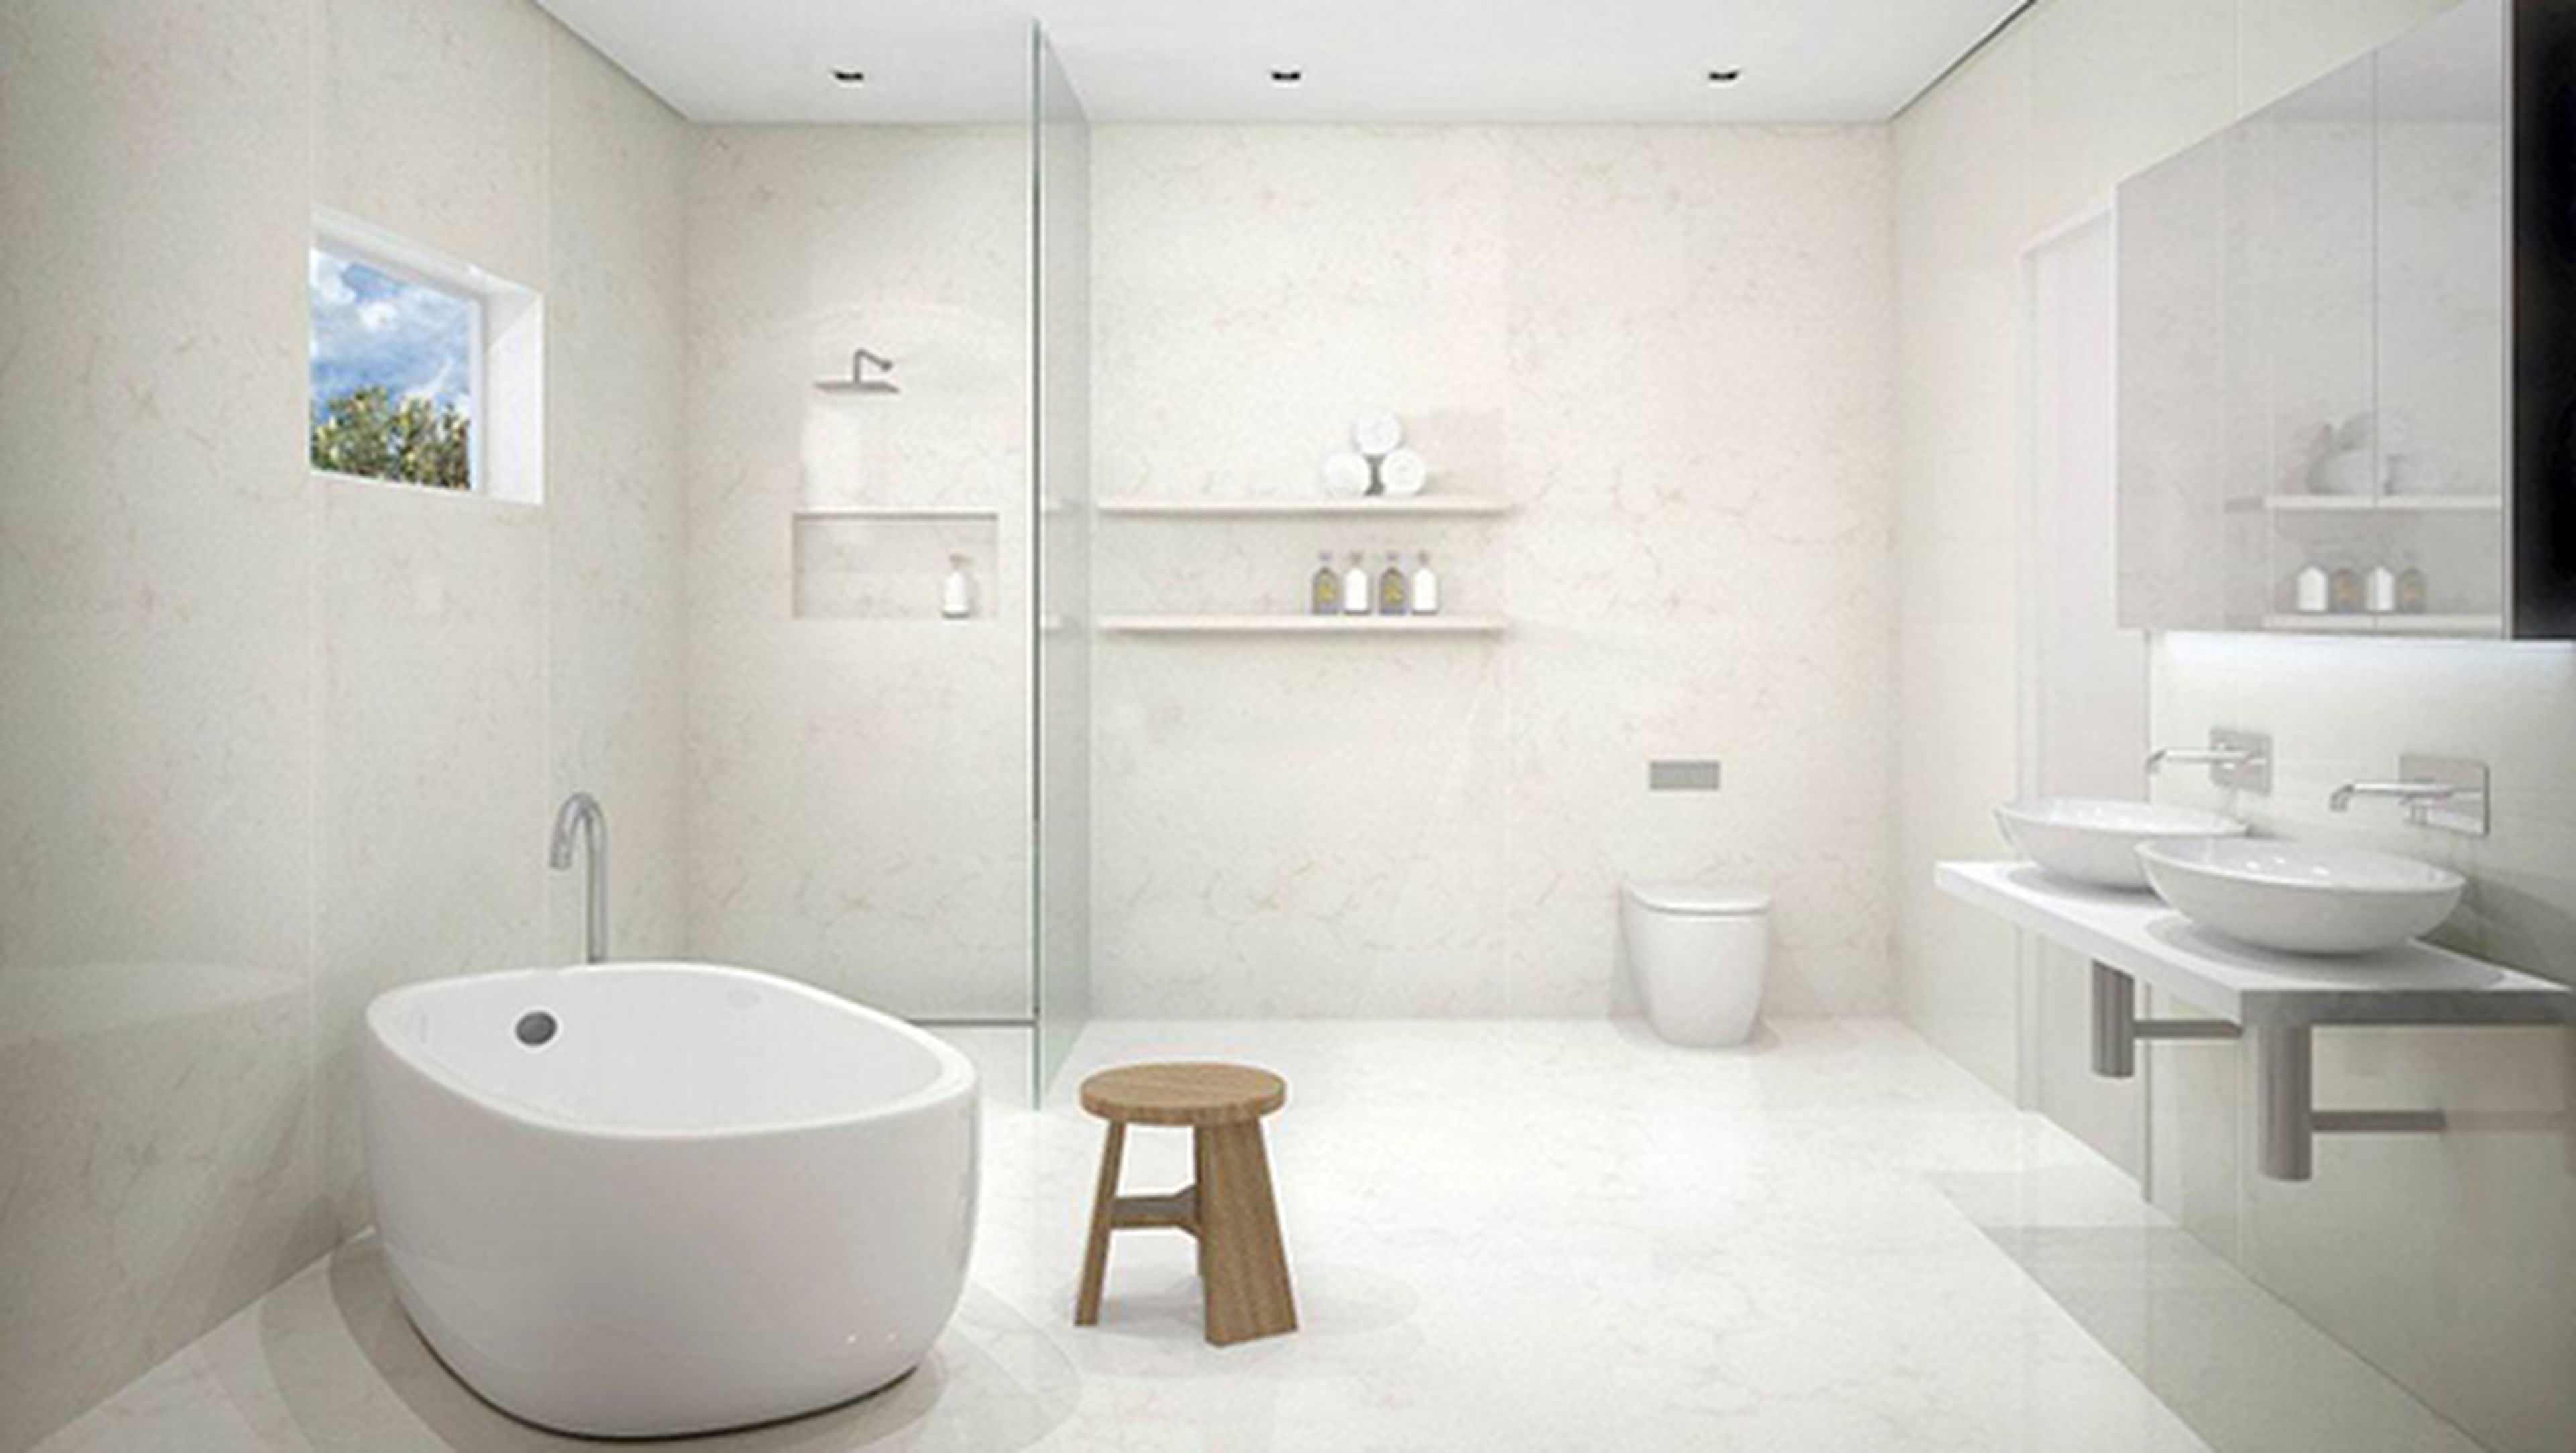 cuarto de baño inteligente de google